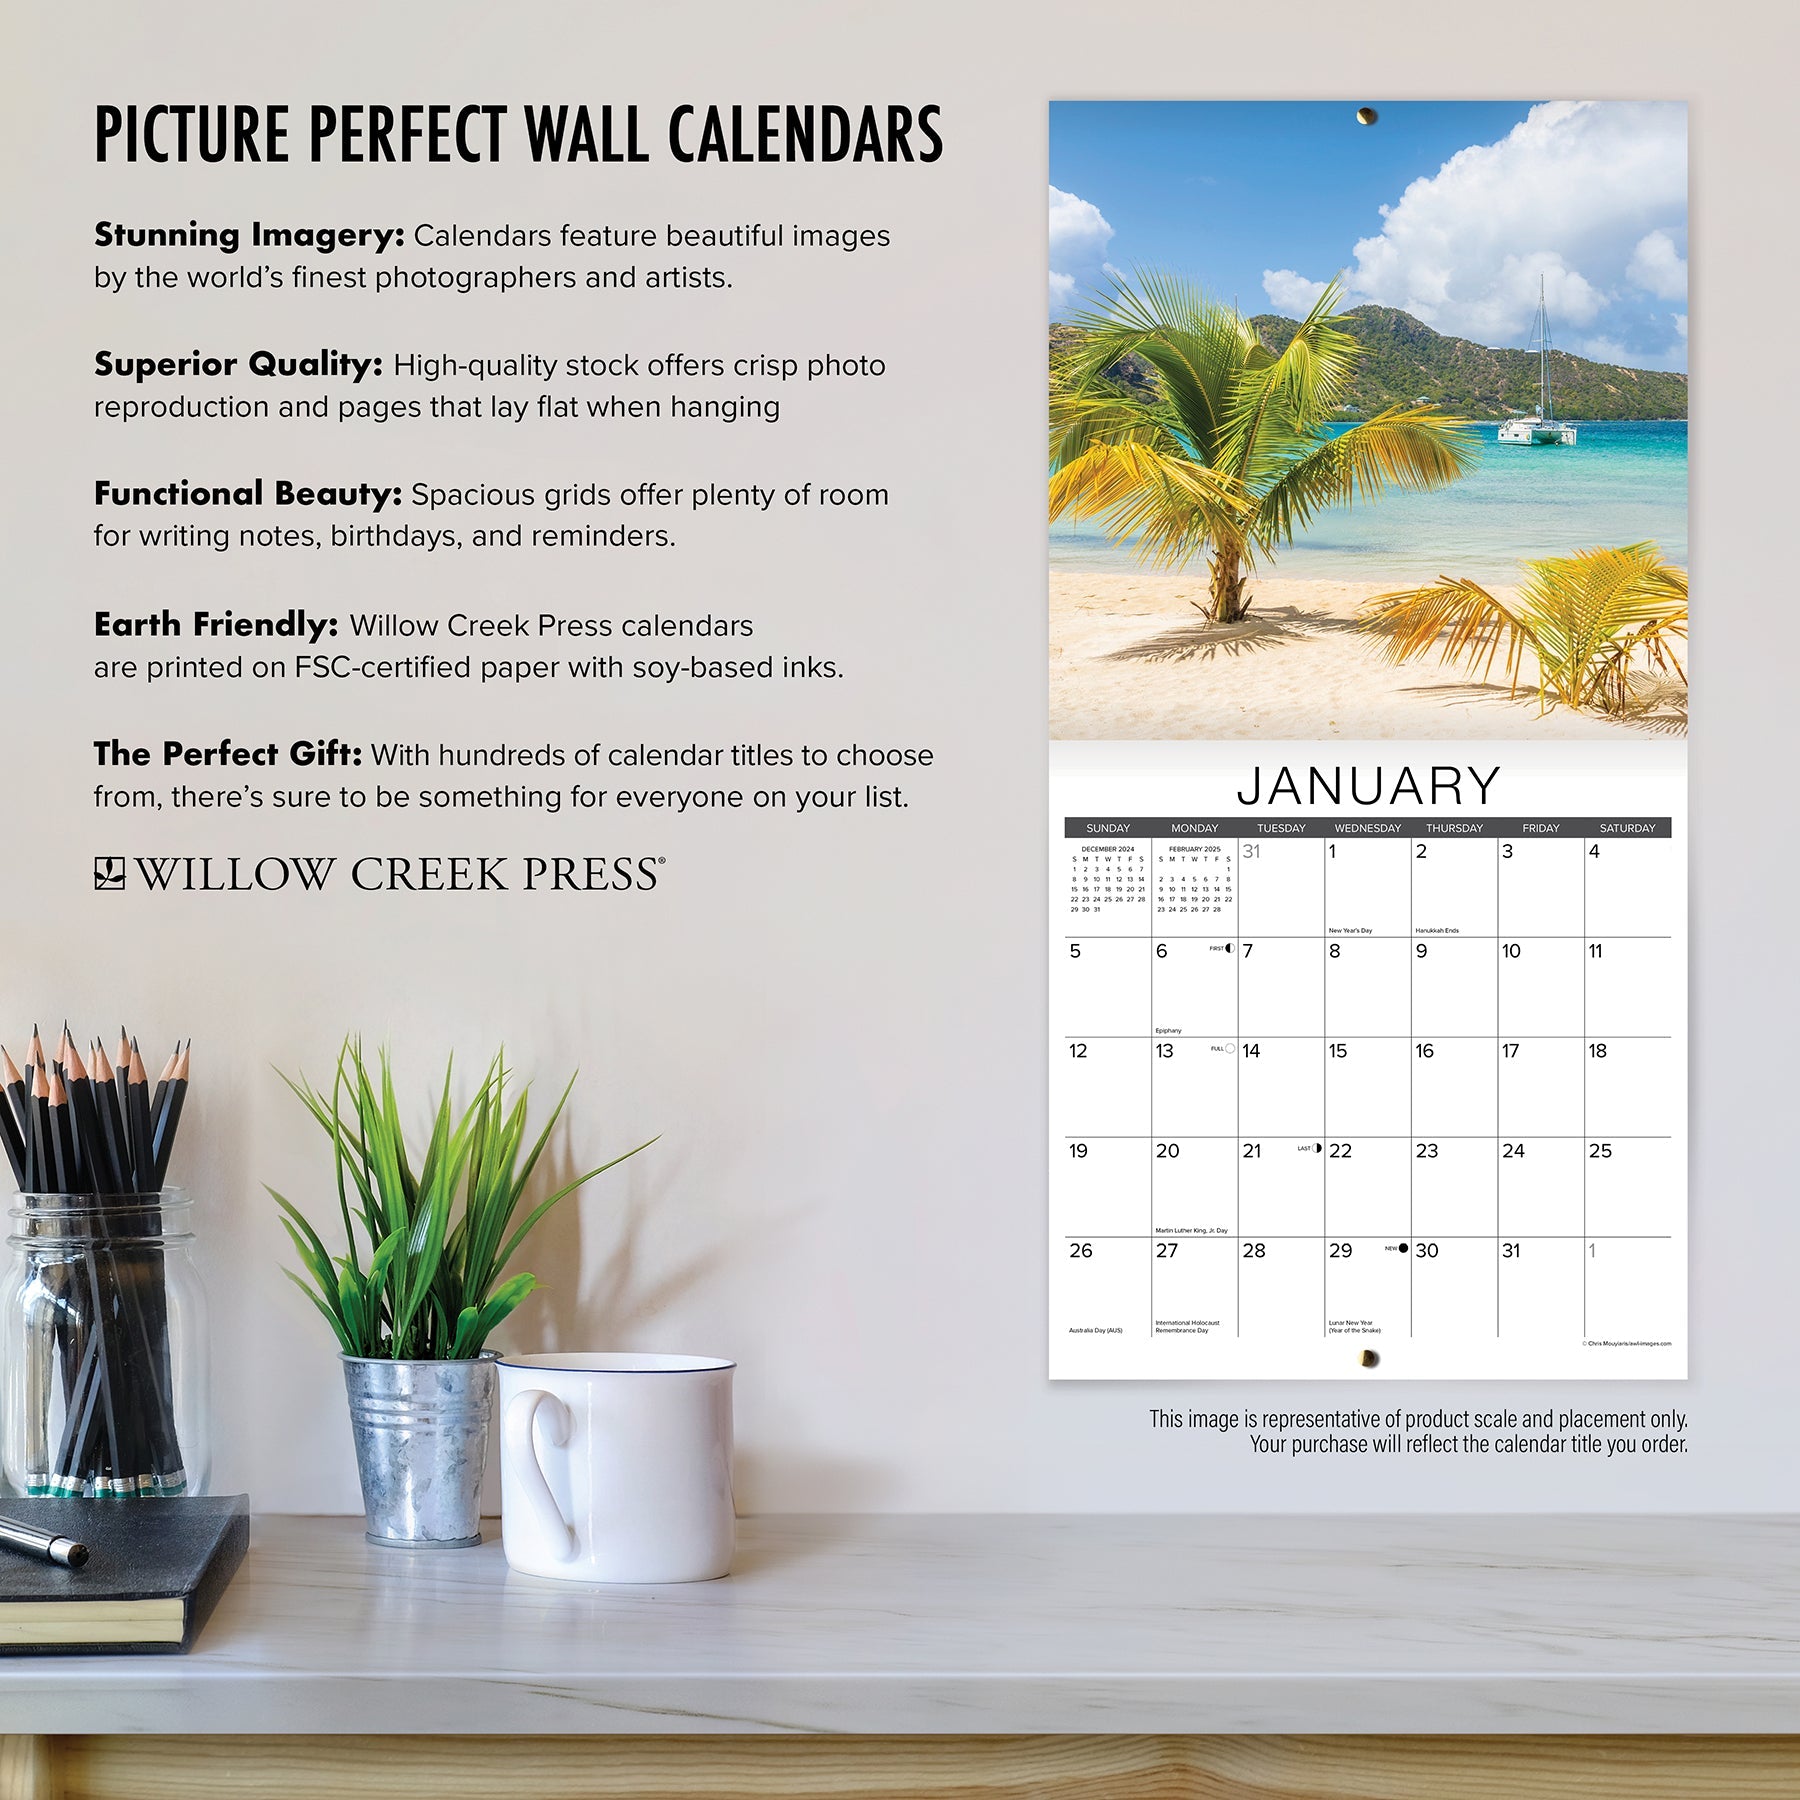 2025 Sloth Yoga - Square Wall Calendar